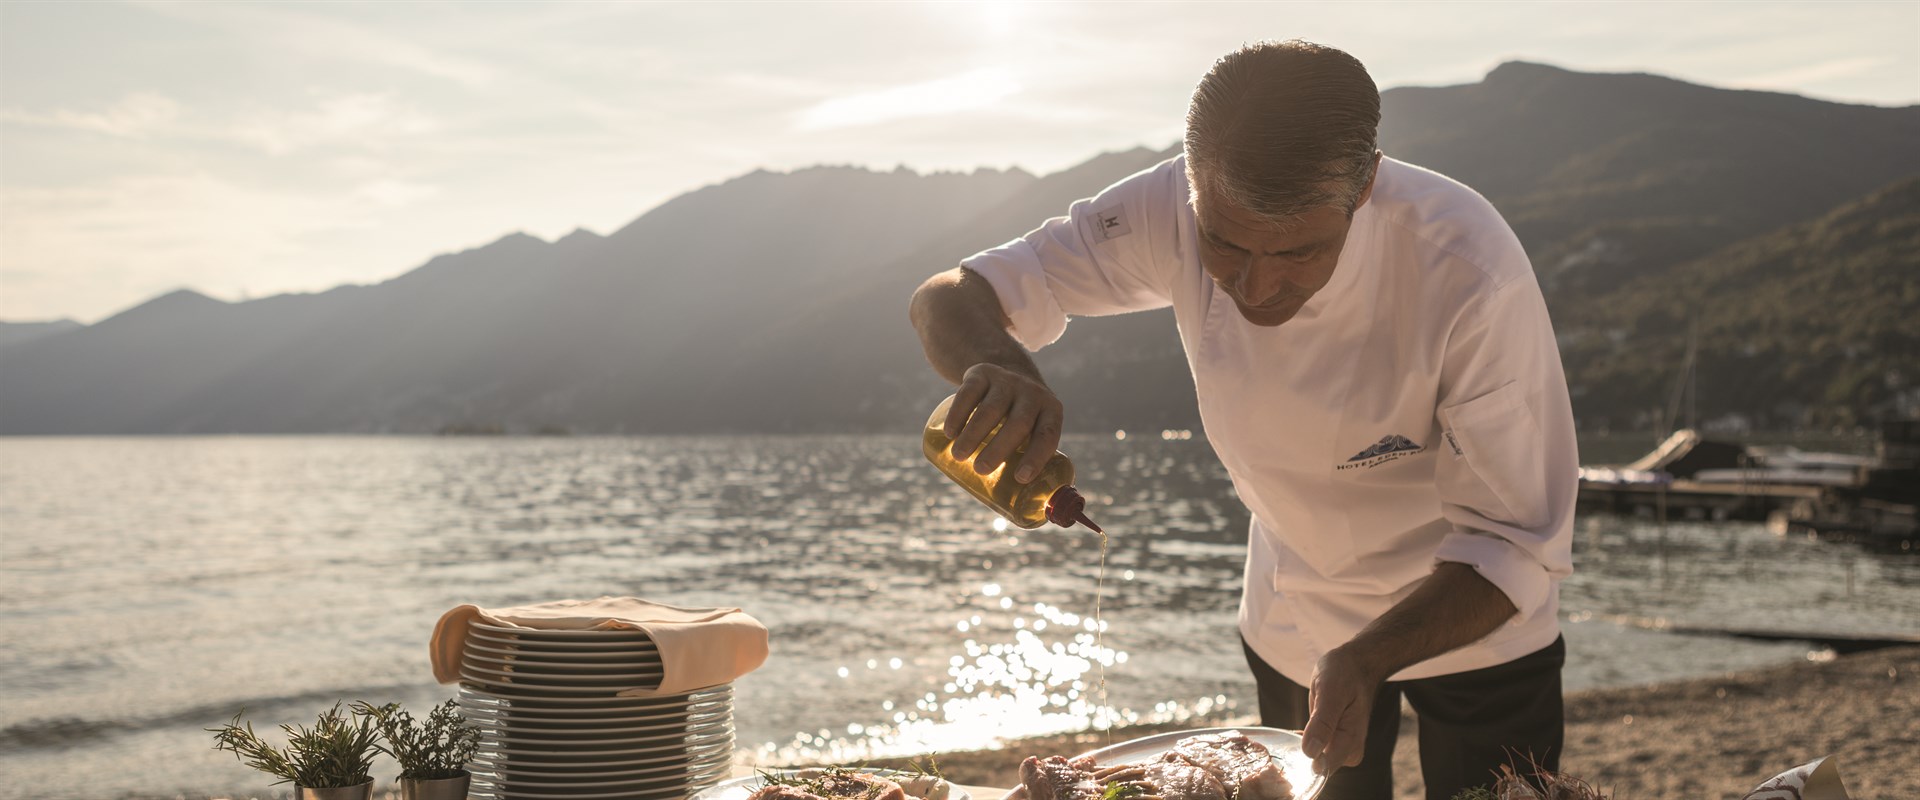 Beeld: Cyrille Kamerzin, chef-kok Eden Roc, bereidt de barbecuelunch op het strand van het hotel.  ©Zwitserland Toerisme/ Giglio Pasqua.